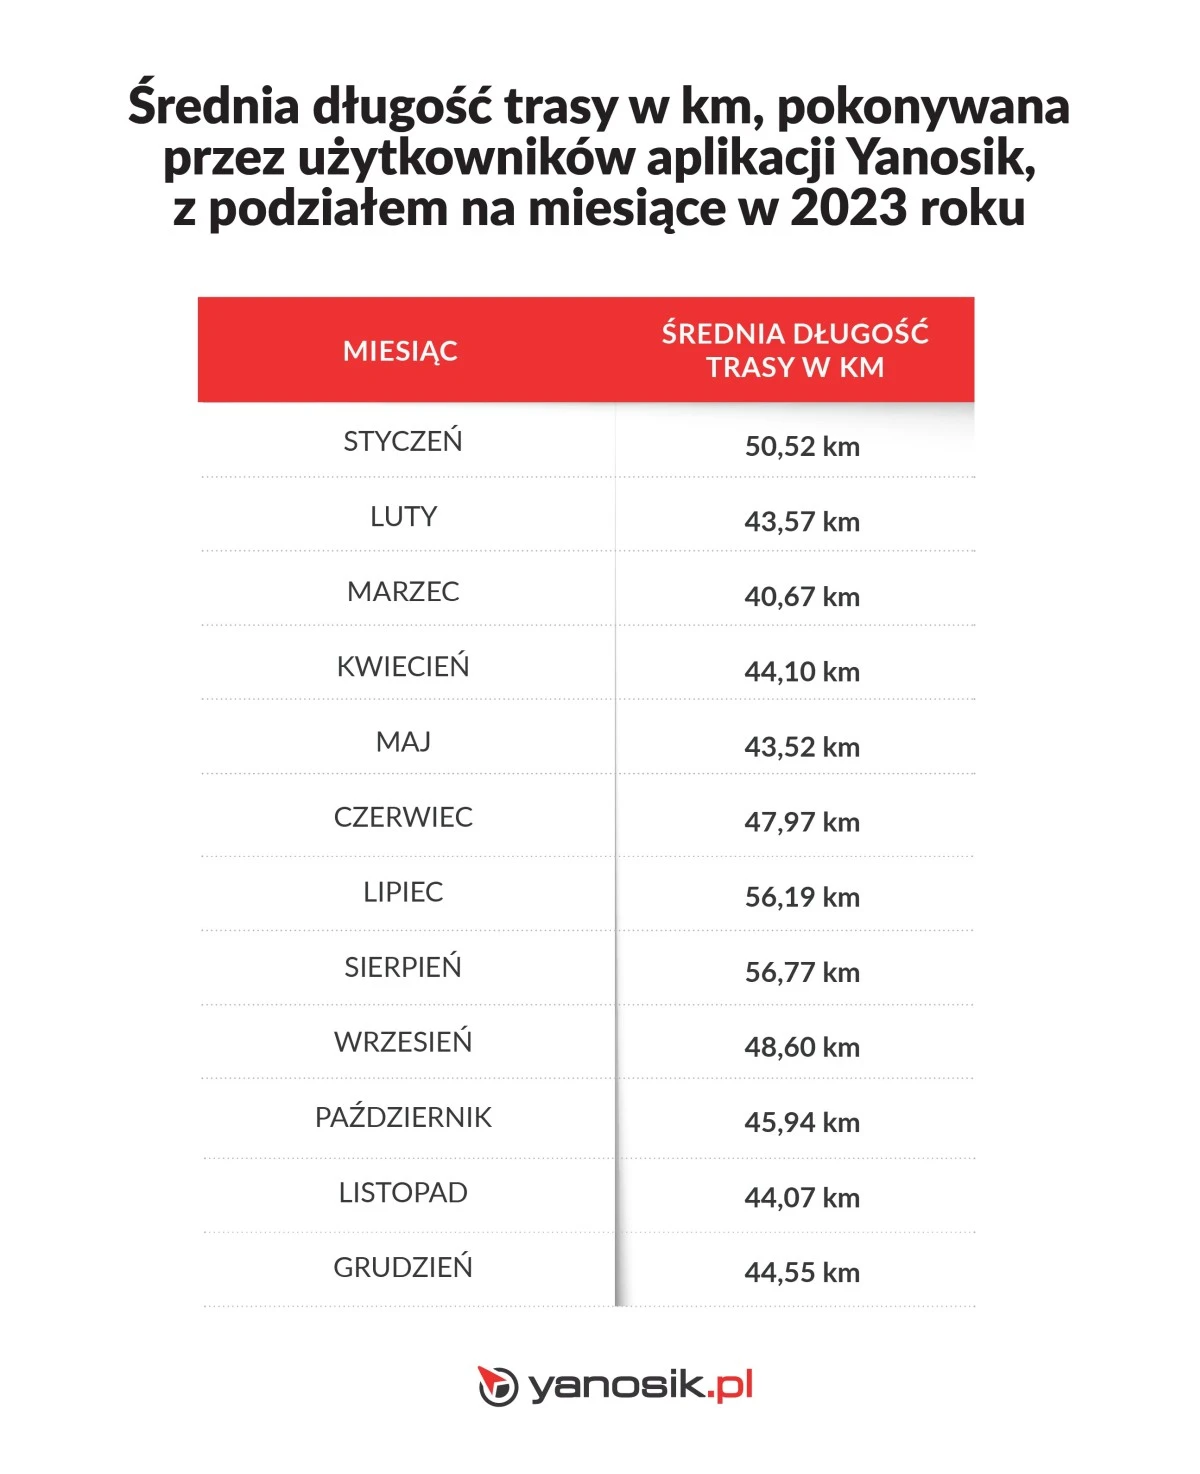 Średnia długość trasy w km pokonywana przez użytkowników Yanosika w 2023 z podziałem na miesiące